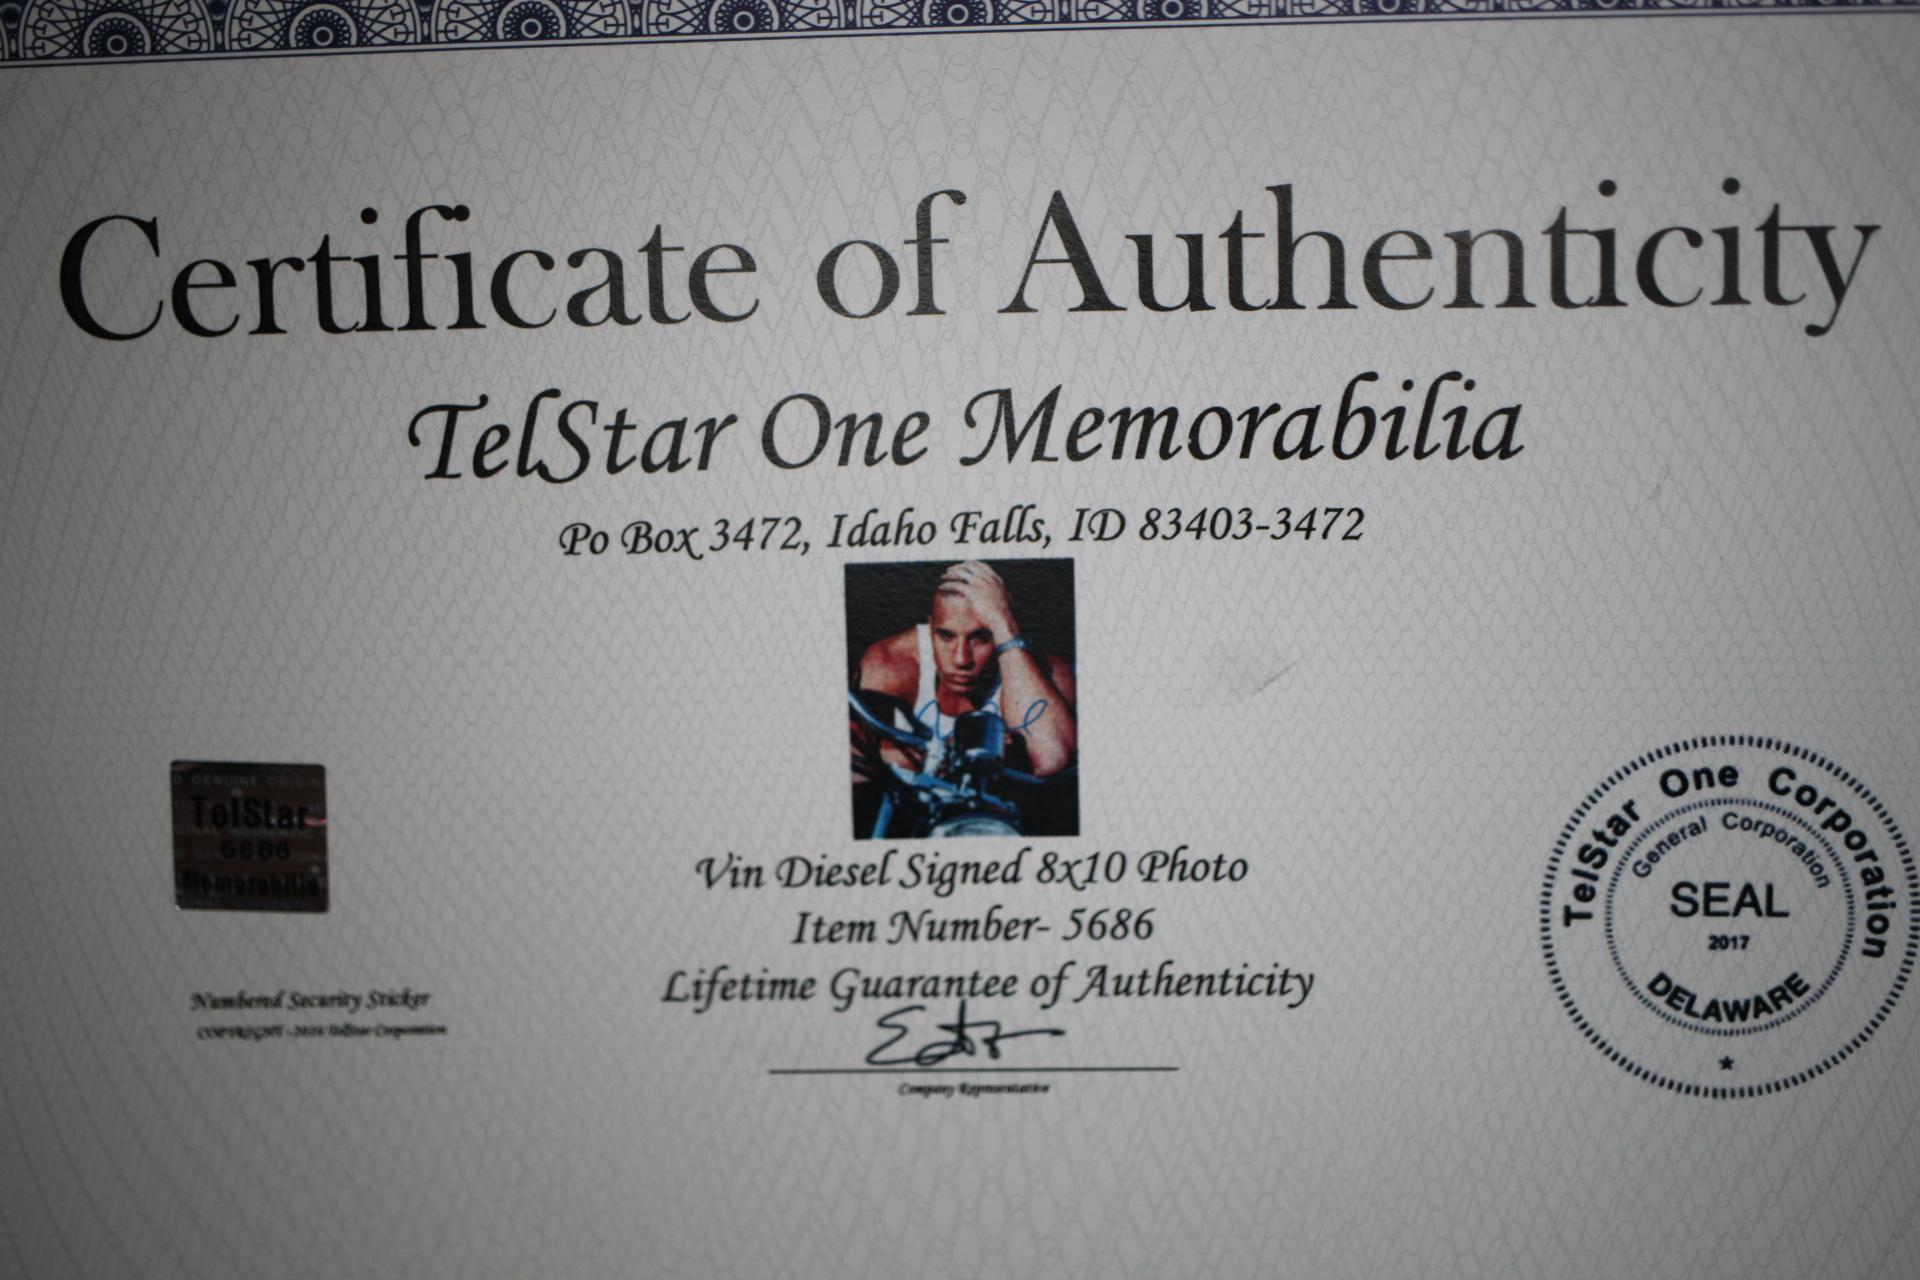 Framed Vin Diesel Signed 8" x 10" Photo, TelStar One Memorabilia, COA